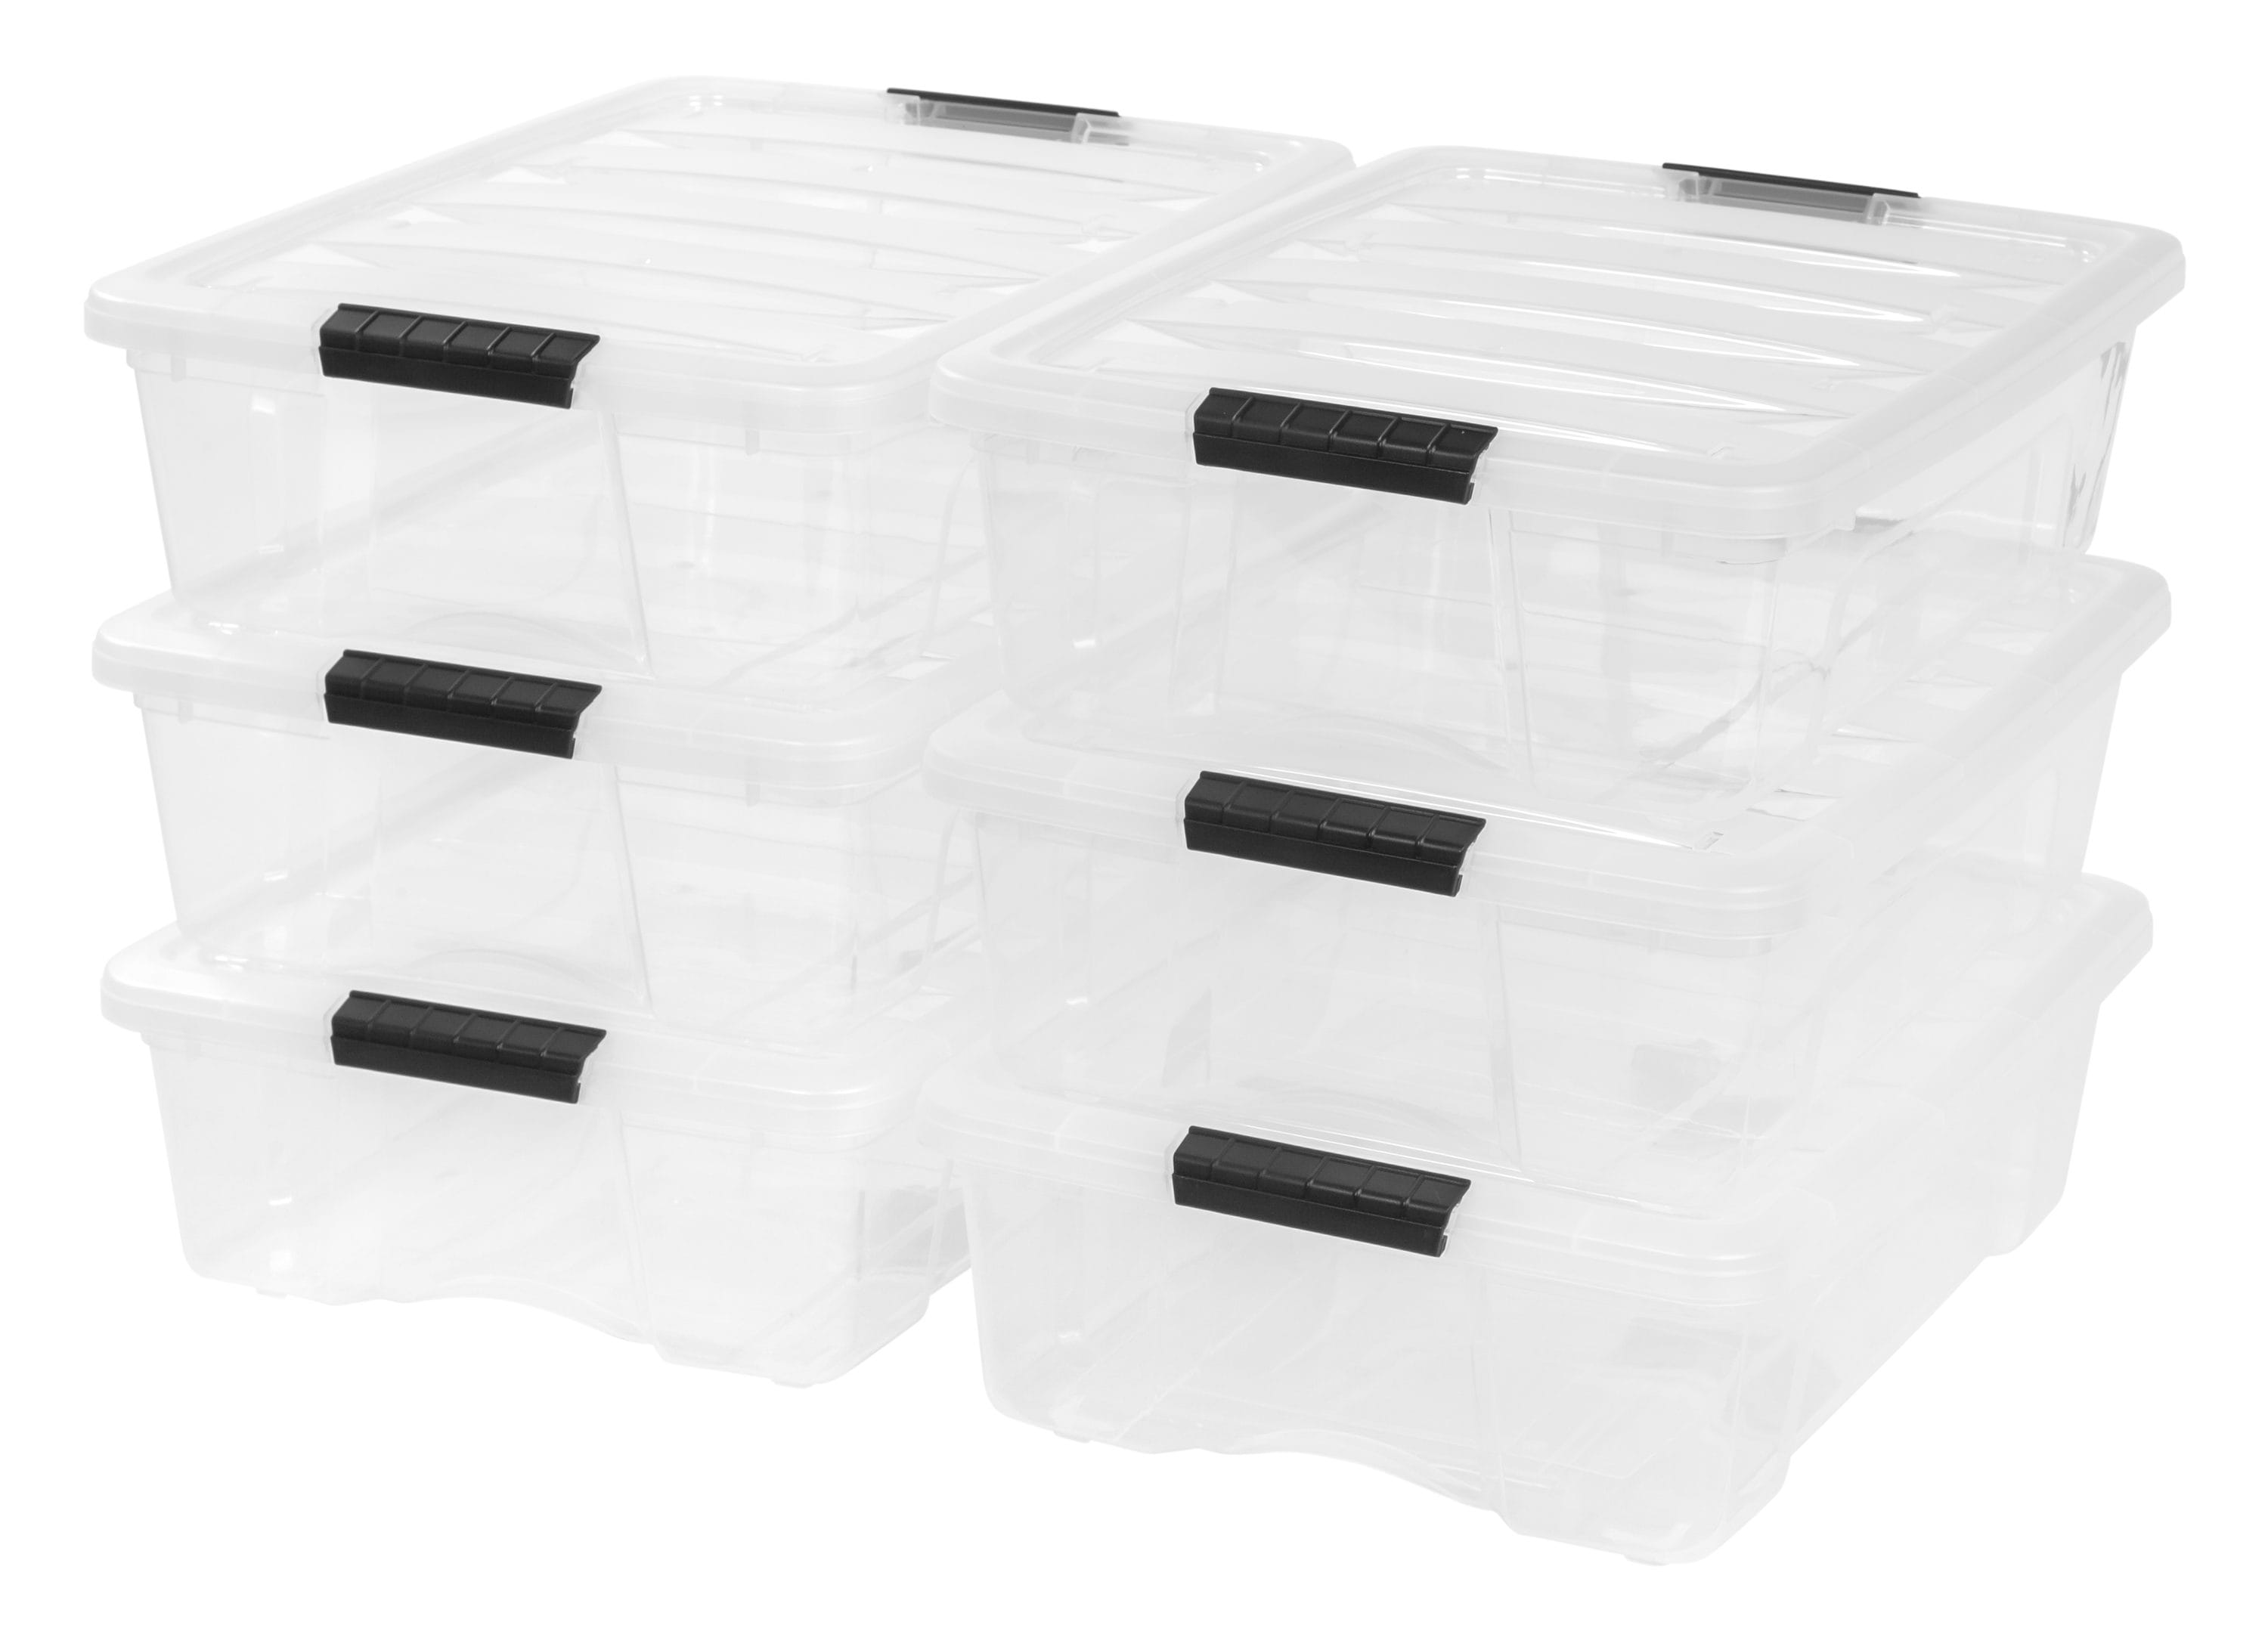 IRIS 12 Qt. Heavy Duty Plastic Storage Box in Black (6-Pack